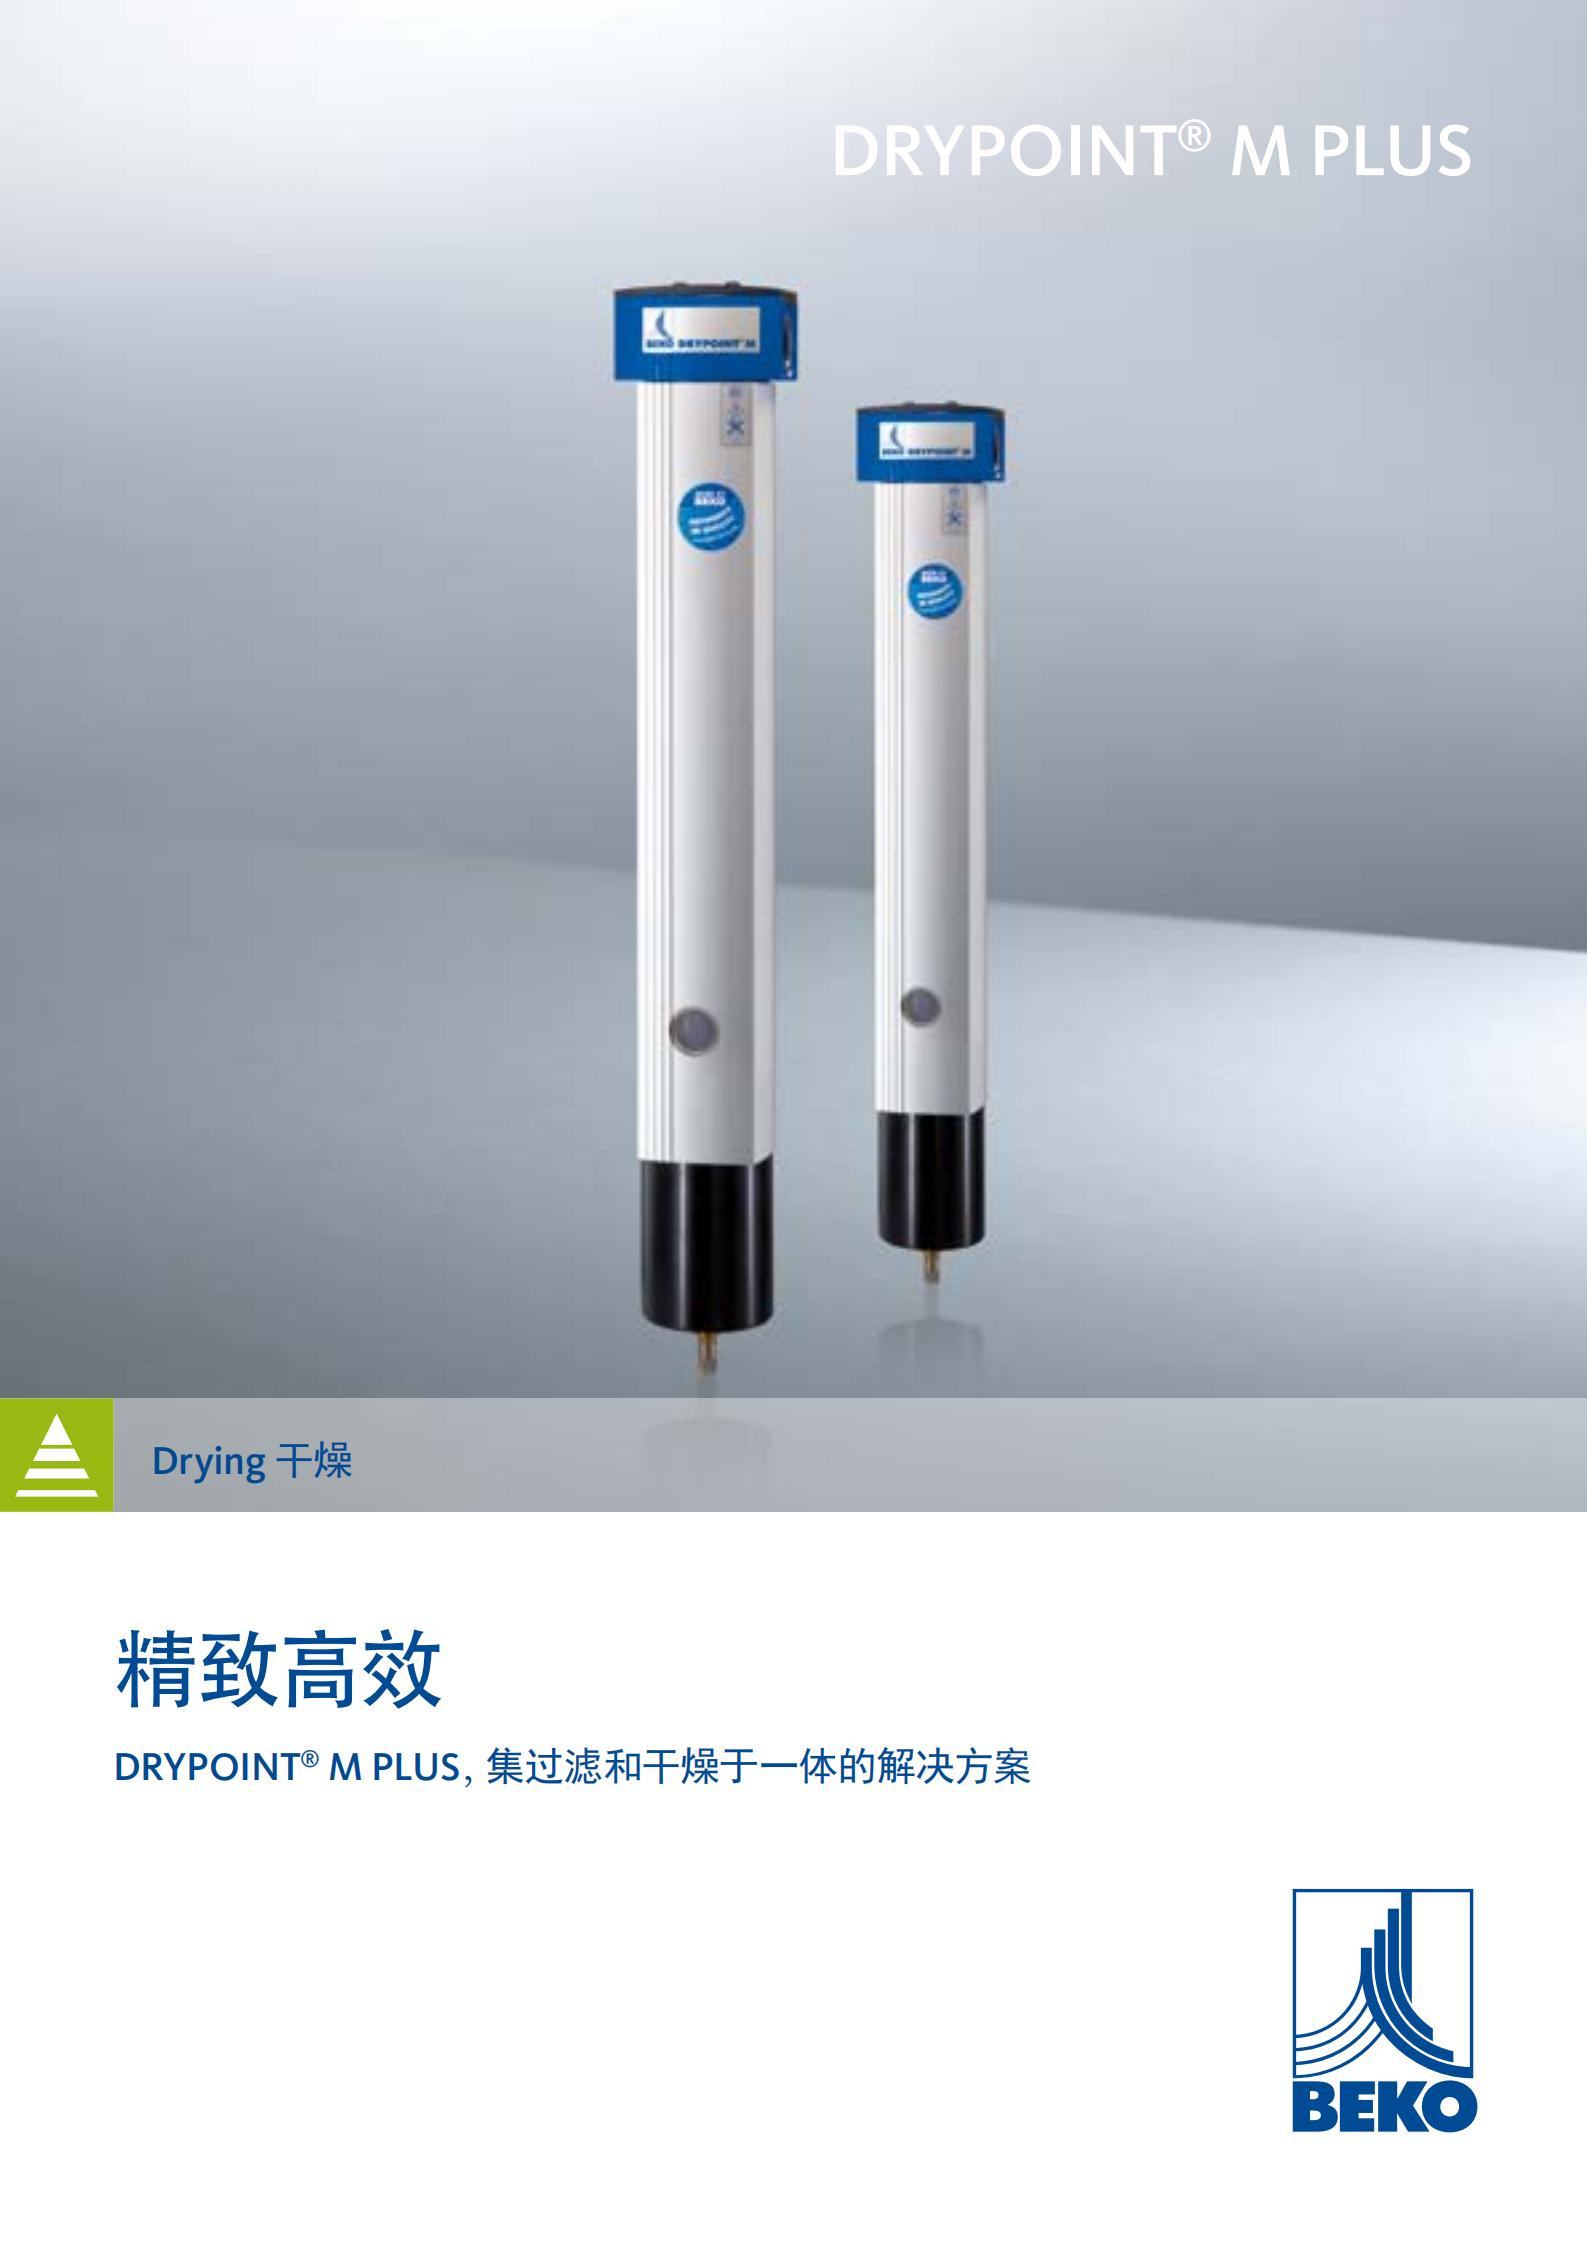 上海市锂电用膜式干燥器DM20G48C厂家供应德国BEKO锂电用膜式干燥器DM20G48CA系列进口